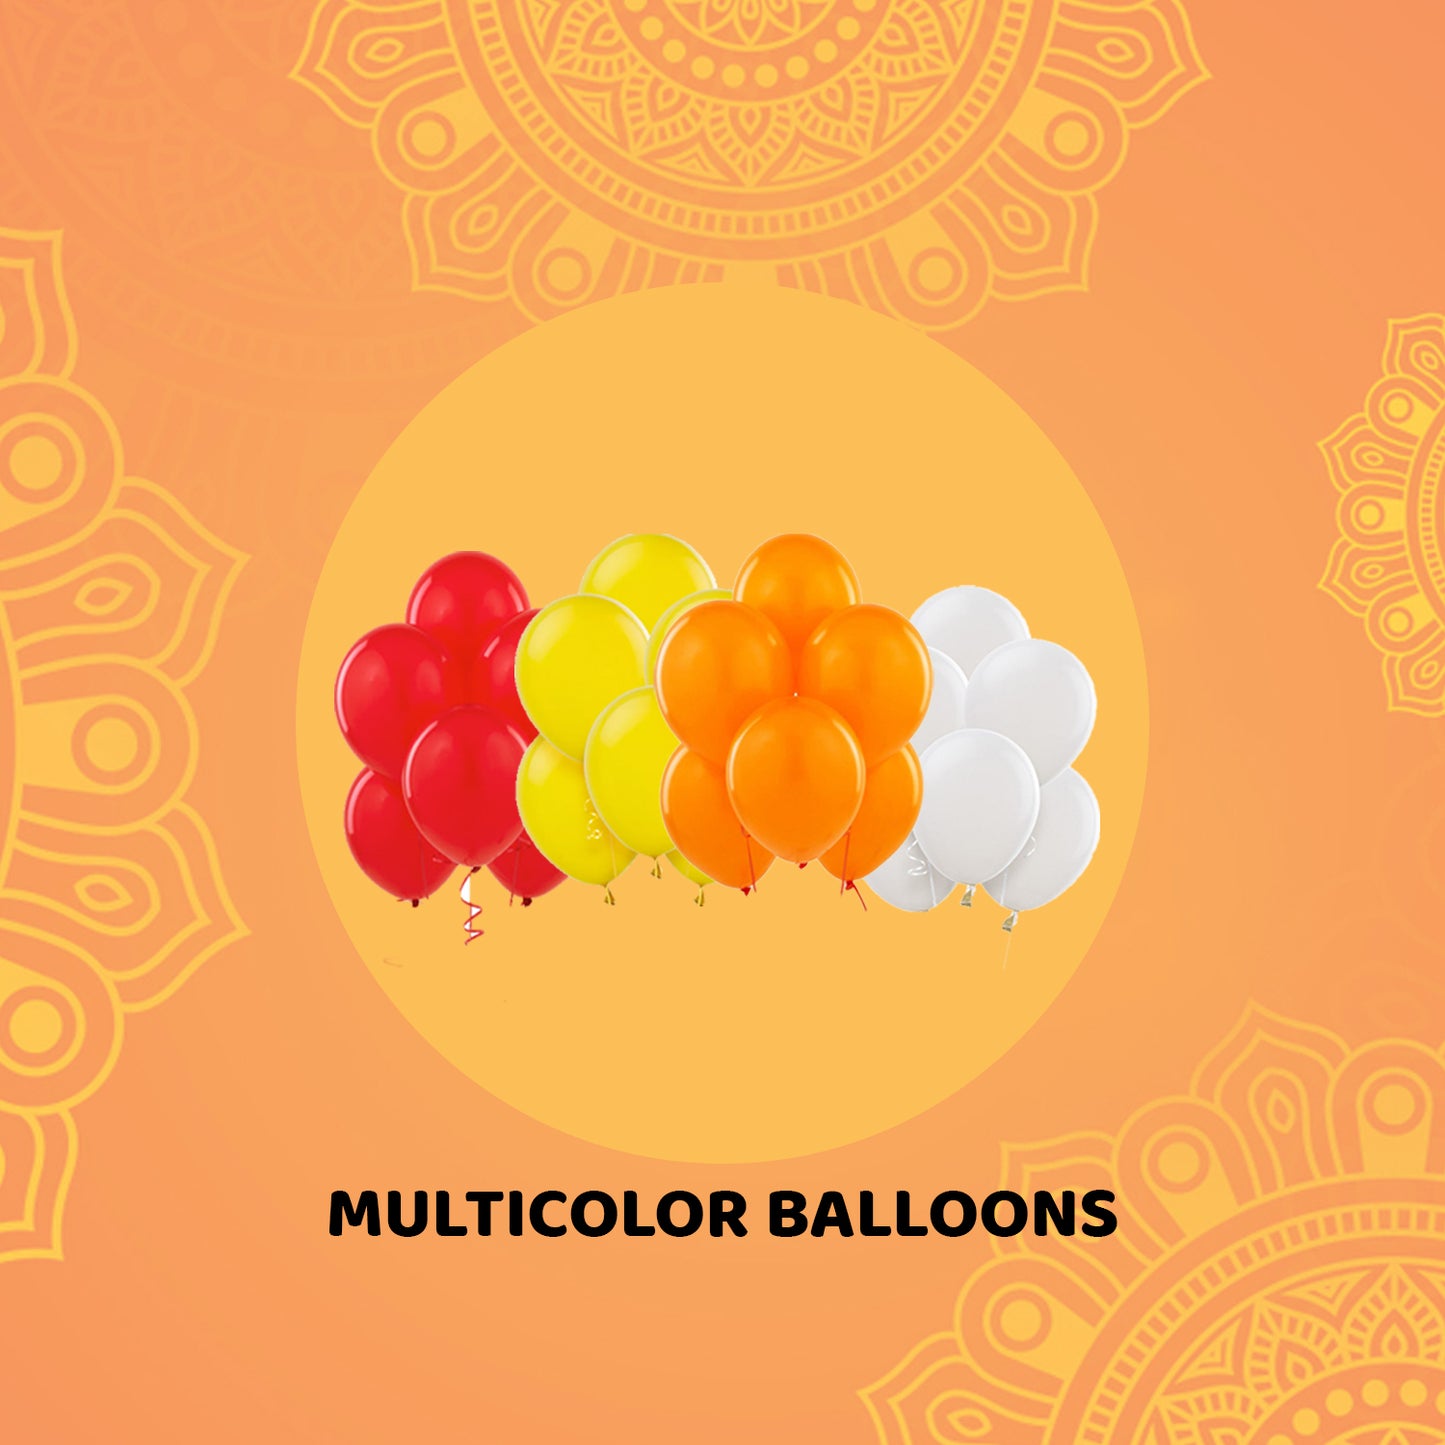 Diwali Decoration Items for Home Décor with Balloons & Diya LED Curtain